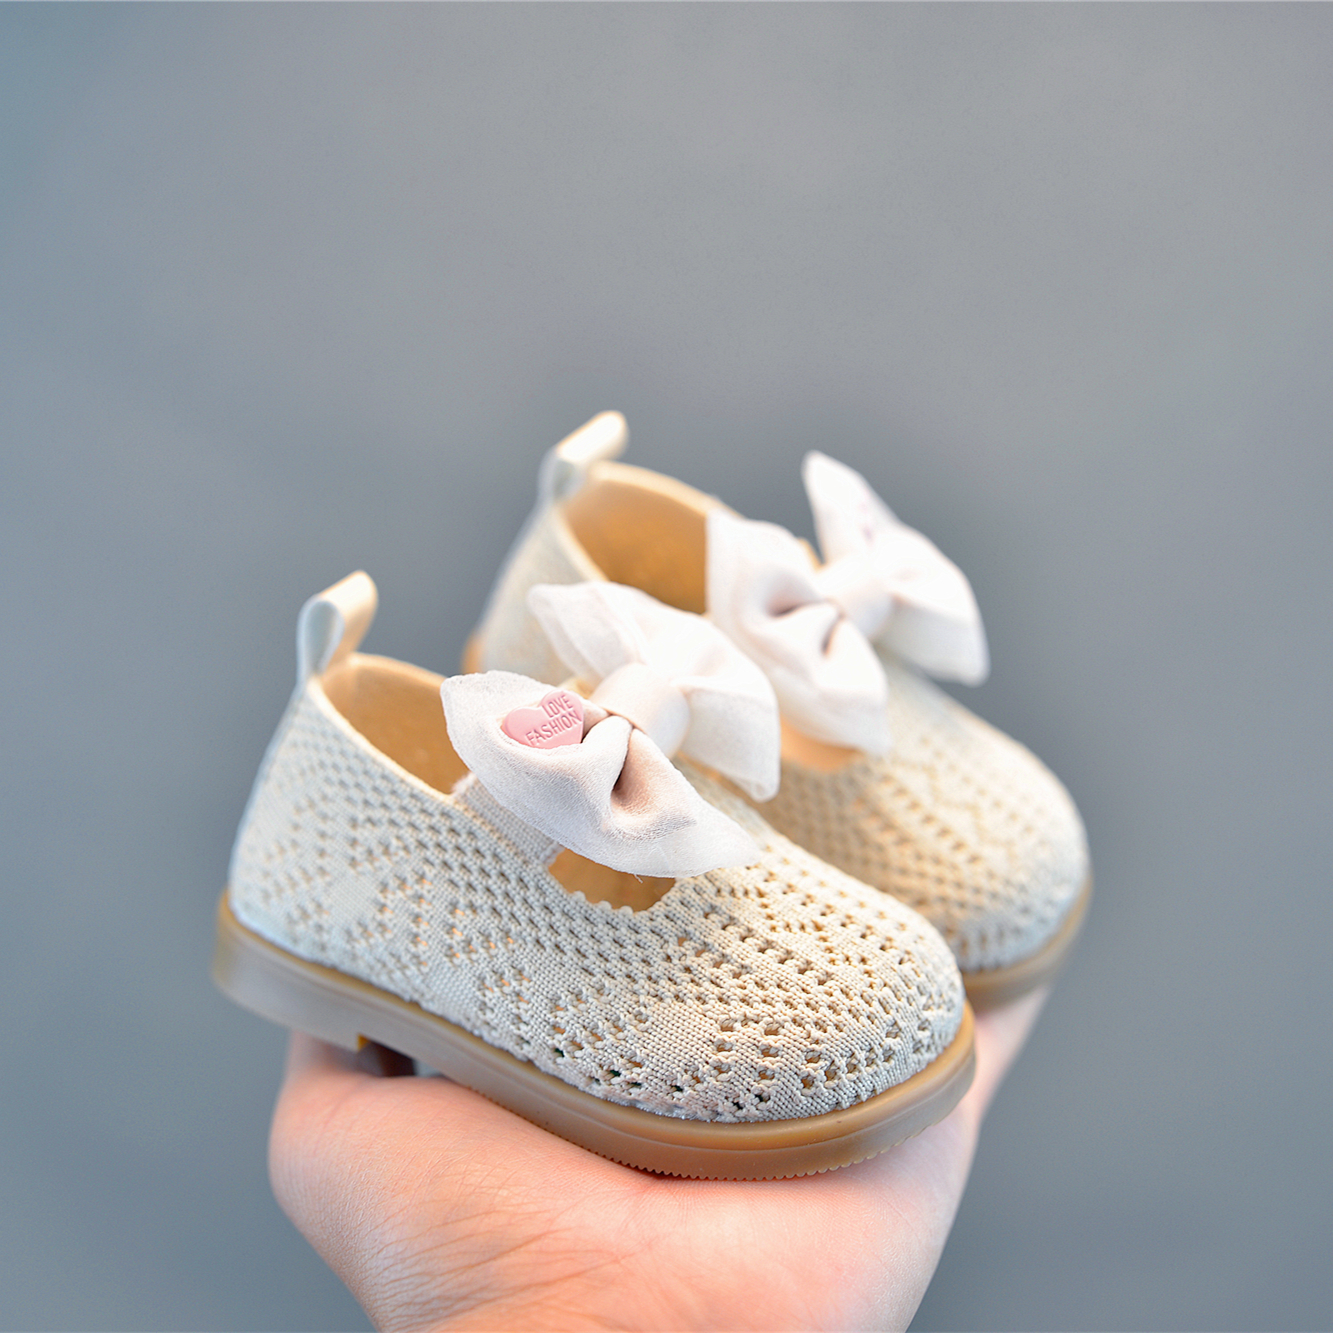 女宝宝公主鞋单鞋1一3岁婴儿童软底学步鞋子飞织鞋春季新款女童鞋